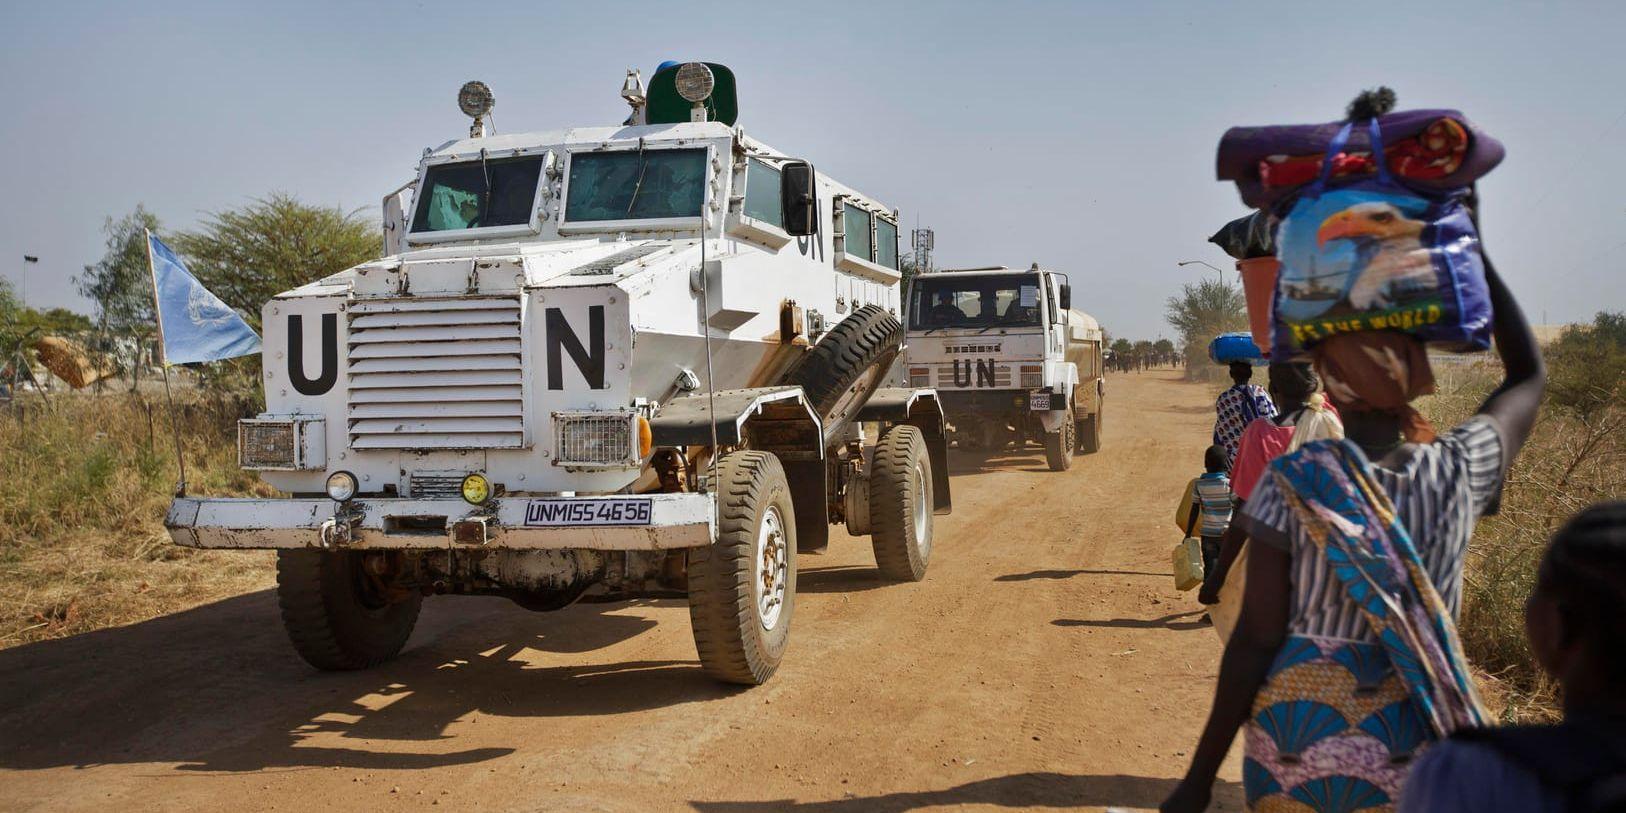 FN-fordon passerar människor på väg mot ett flyktingläger i staden Malakal i Sydsudan. Människorna på bilden har inget att göra med artikeln.